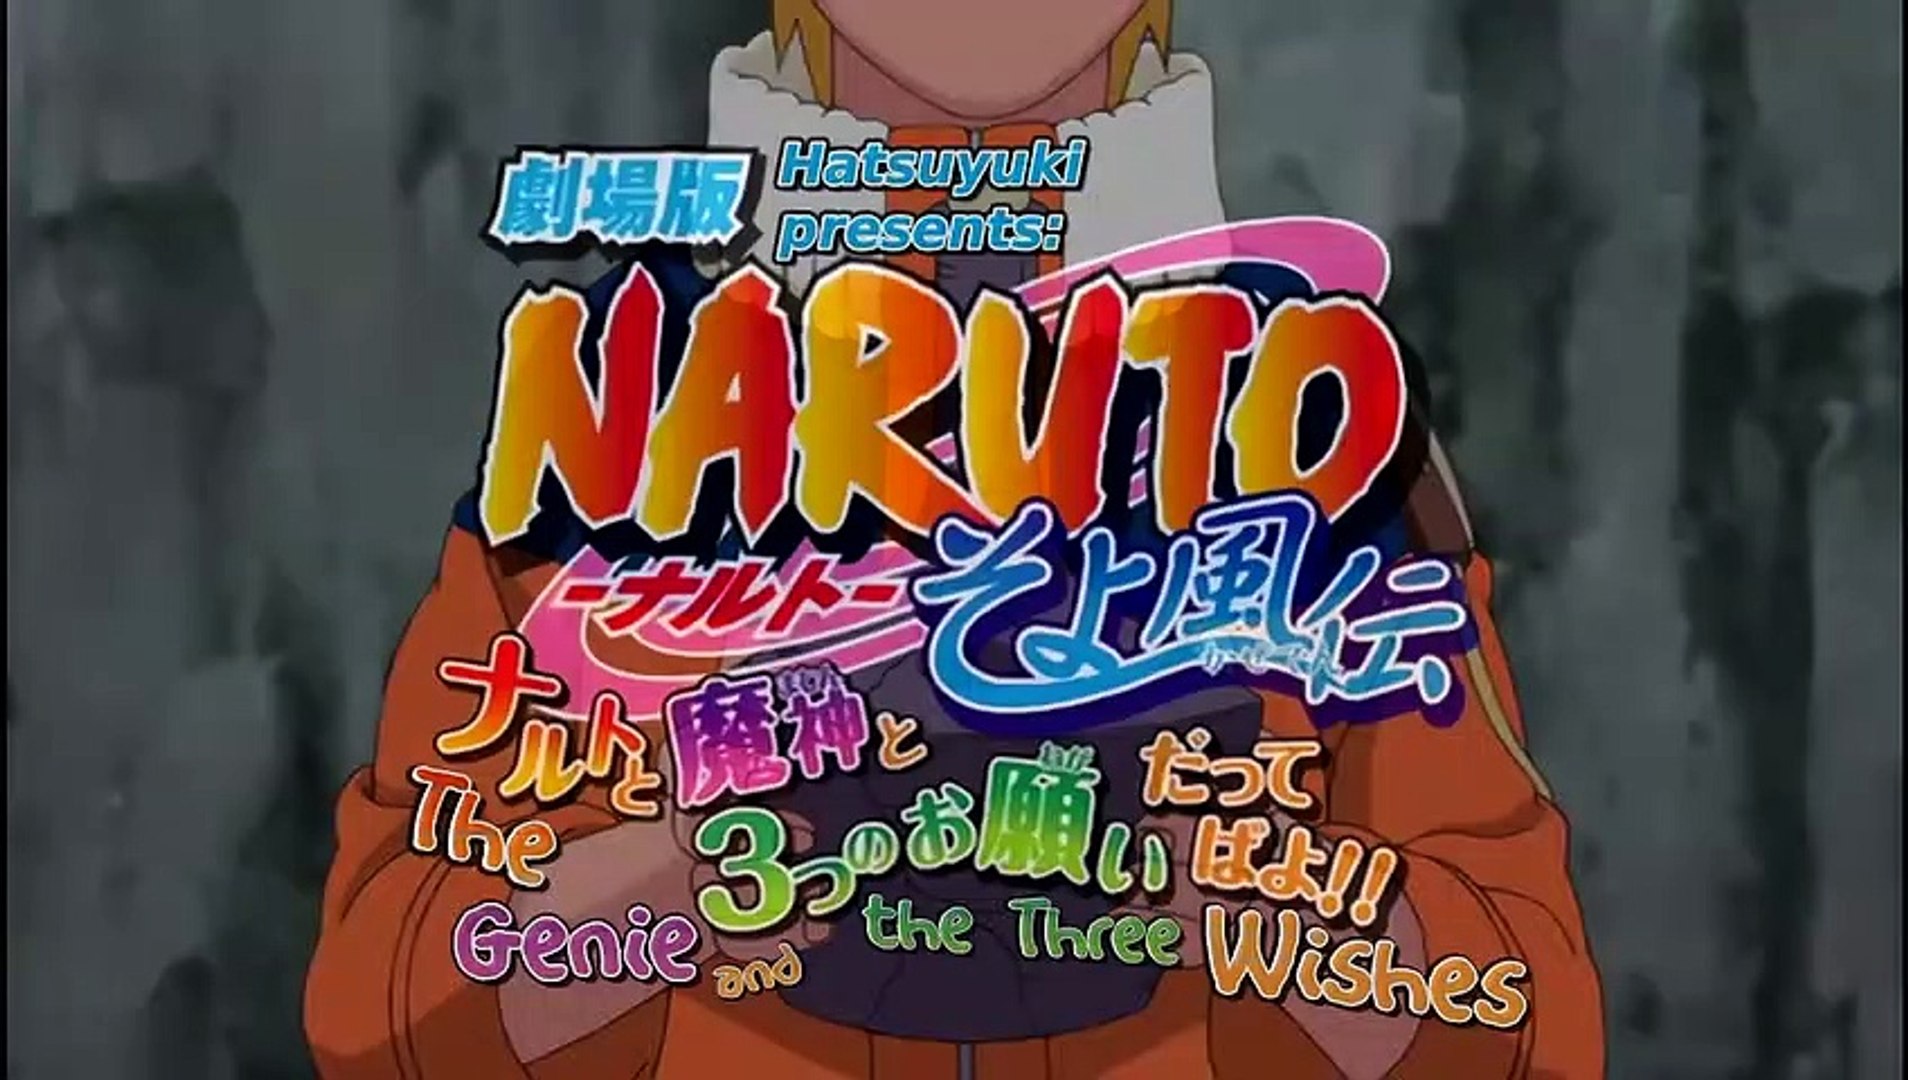 Naruto 2015 , 10% a + desbugado by Mava